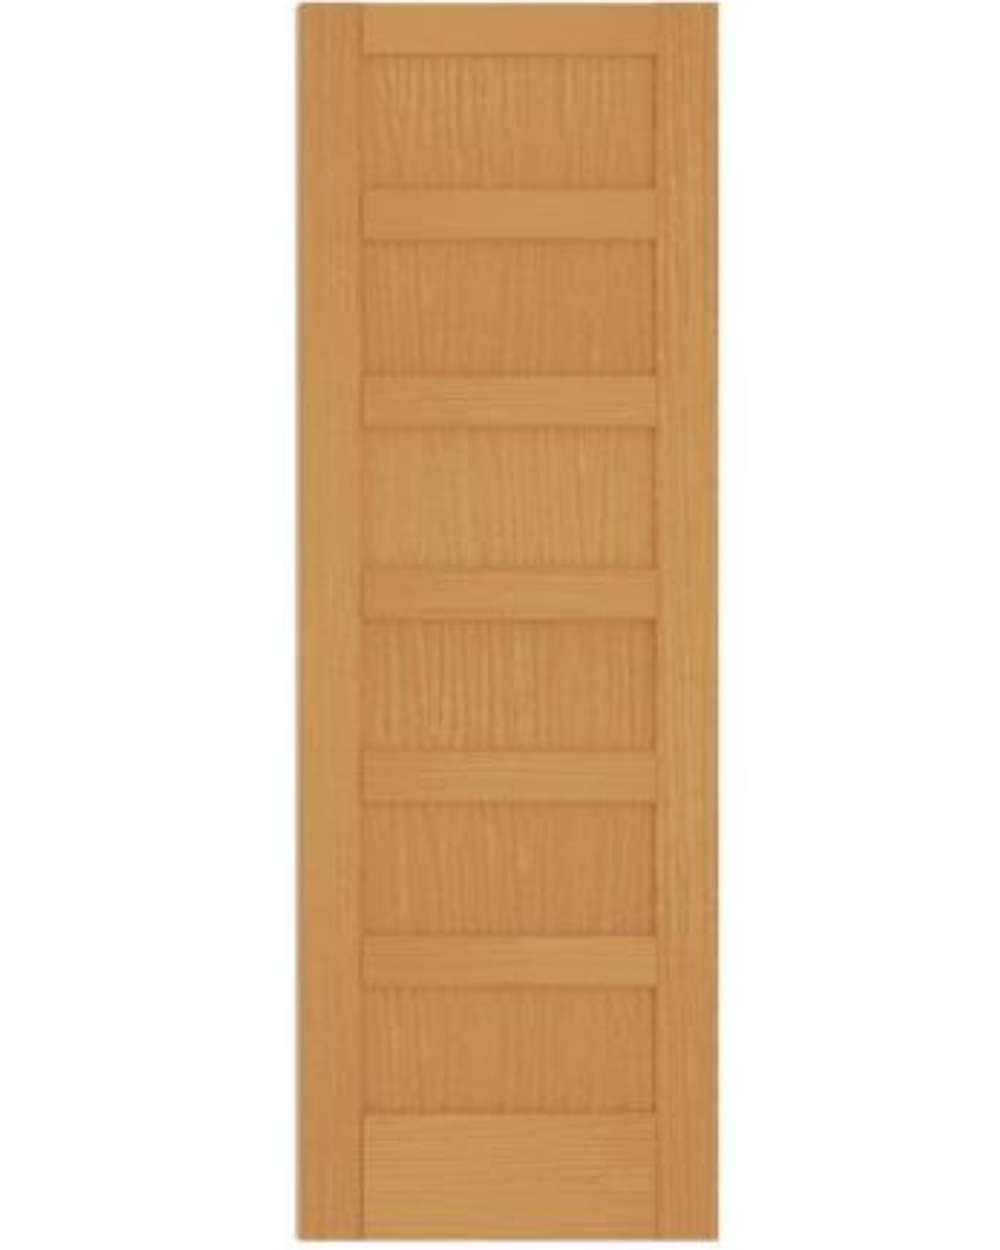 6 Panel Shaker Style (Red Oak)